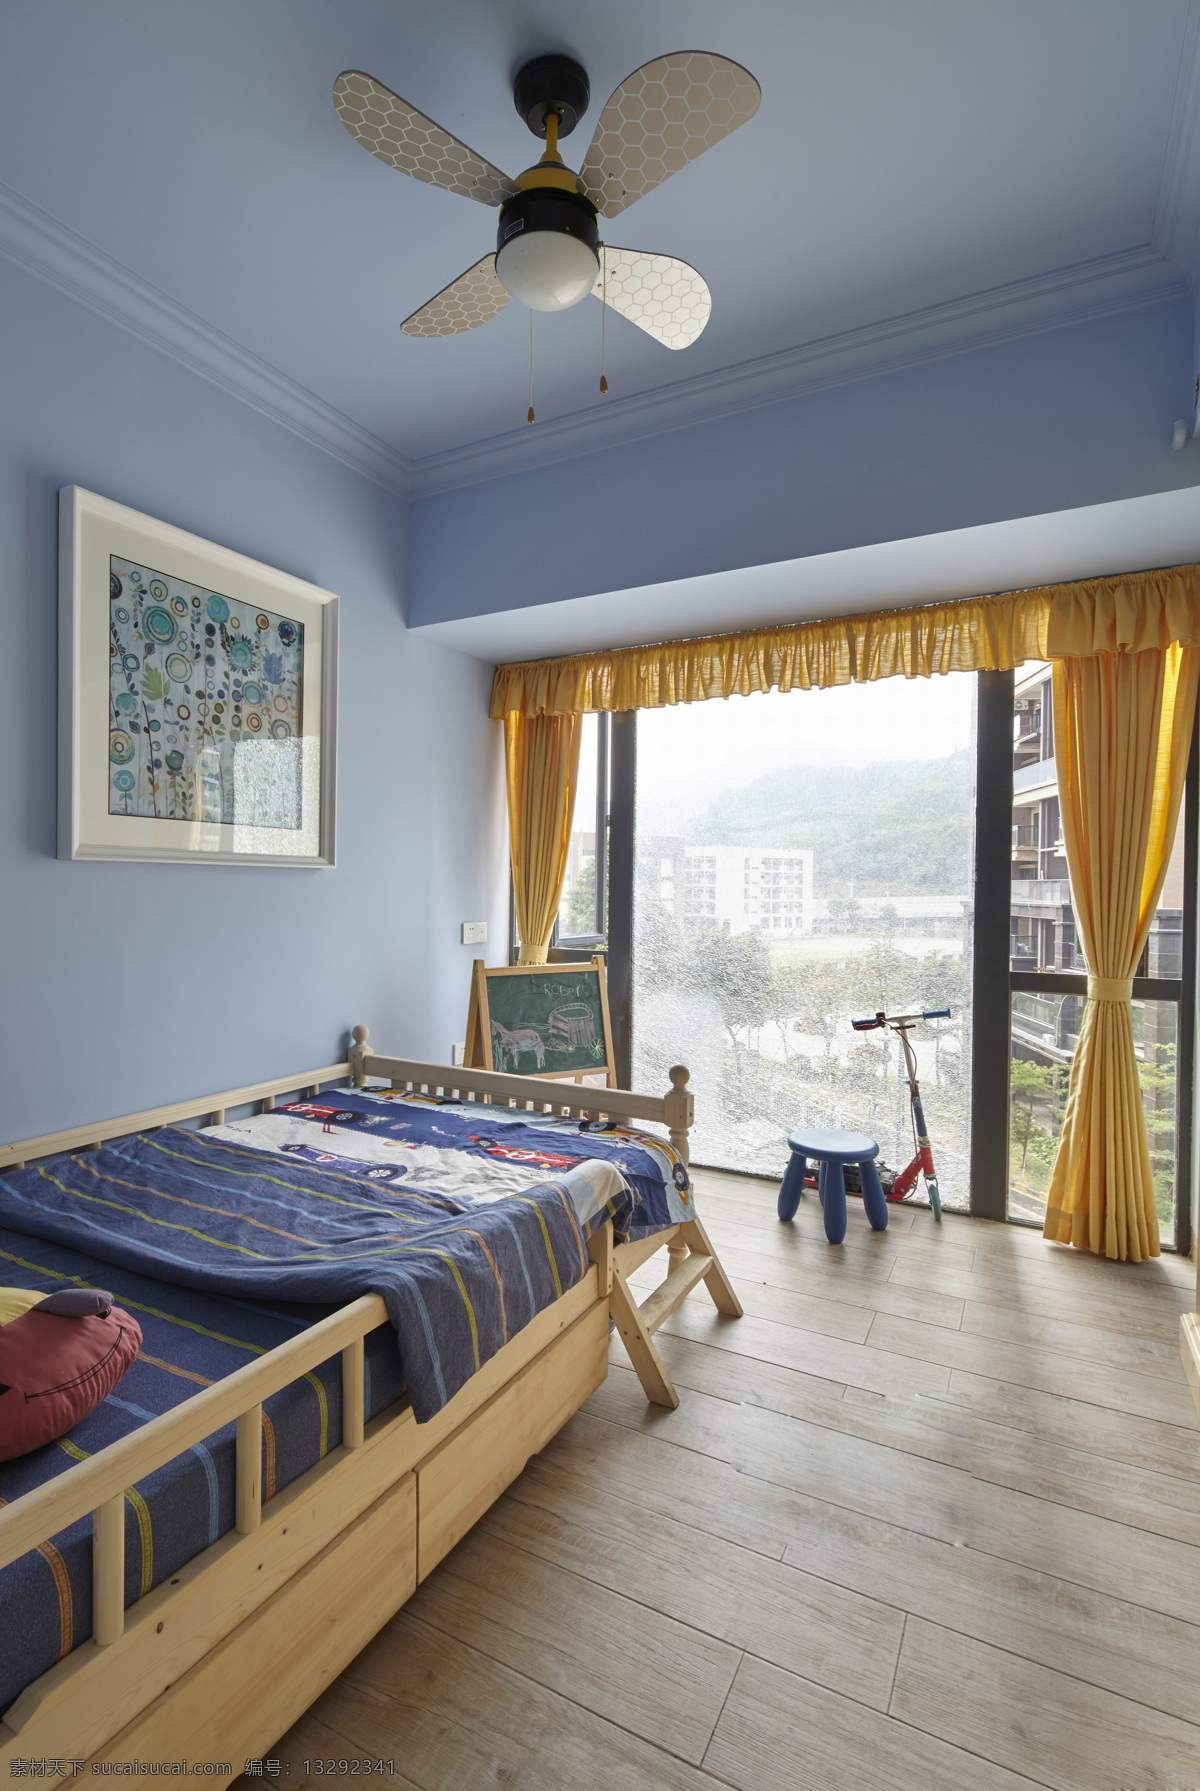 现代 蓝色 主题 儿童 房 效果图 儿童房 软装效果图 室内设计 展示效果 房间设计家装 家具